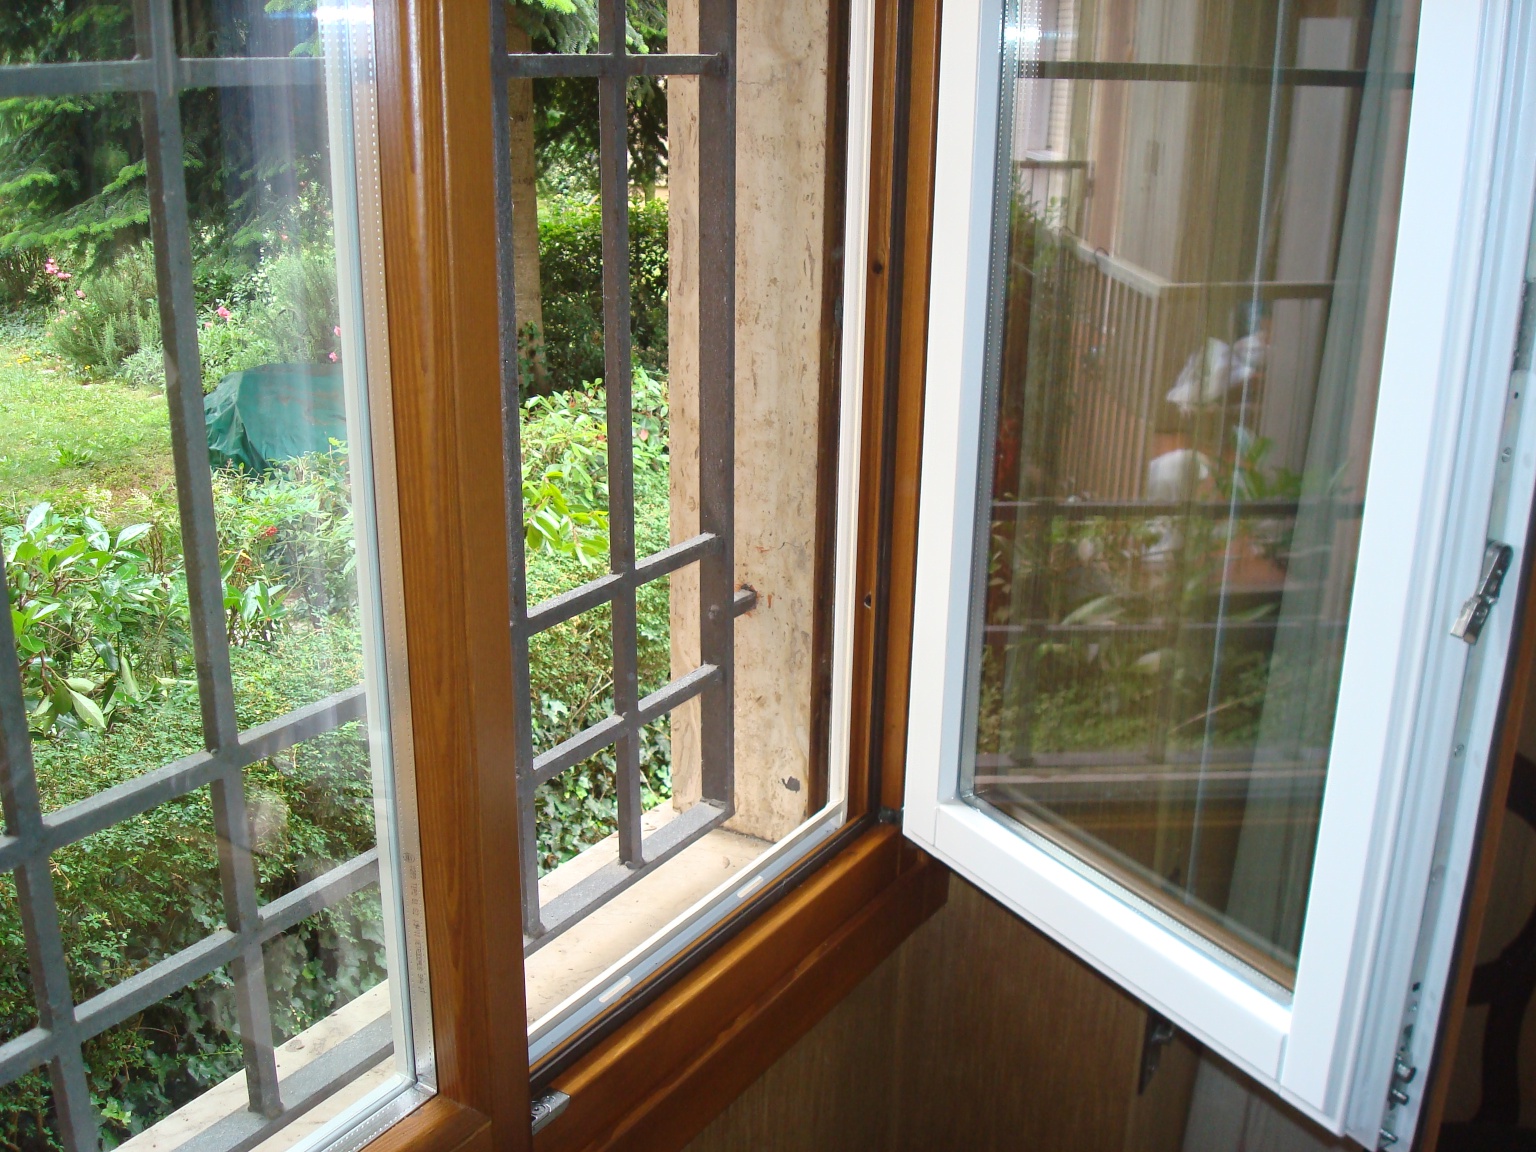 Efficienza energetica, sicurezza e risparmio in casa: preventivo gratuito per porte, finestre e serramenti